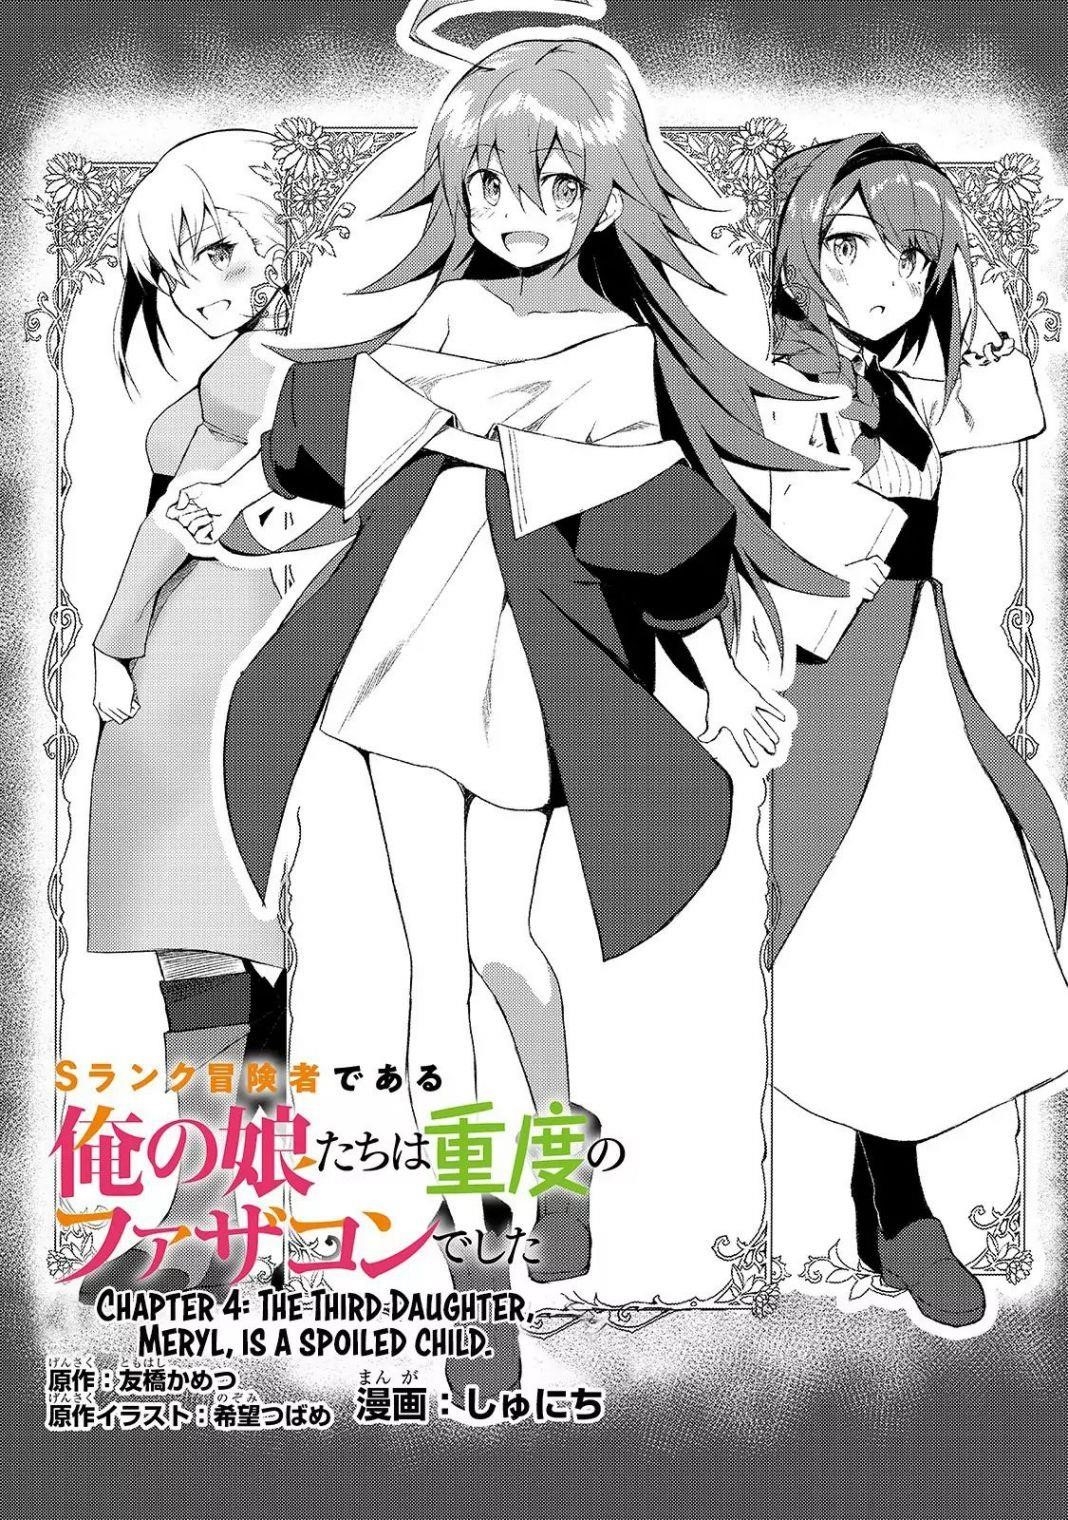 S Rank Boukensha de aru Ore no Musume-tachi wa Juudo no Father Con deshita  Manga - Read Manga Online Free